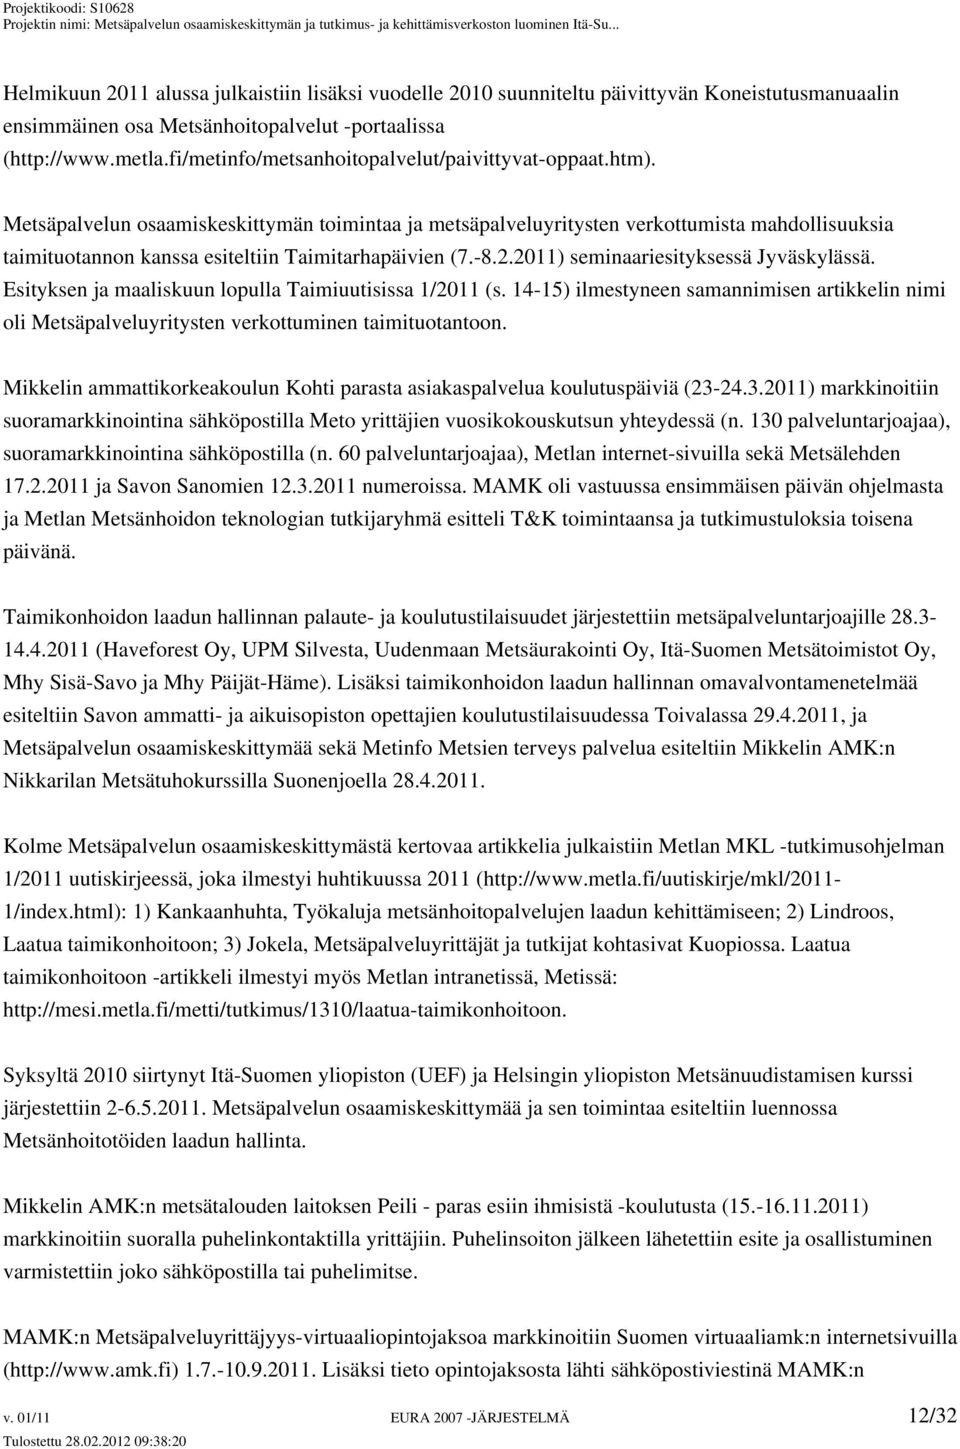 Metsäpalvelun osaamiskeskittymän toimintaa ja metsäpalveluyritysten verkottumista mahdollisuuksia taimituotannon kanssa esiteltiin Taimitarhapäivien (7.-8.2.2011) seminaariesityksessä Jyväskylässä.